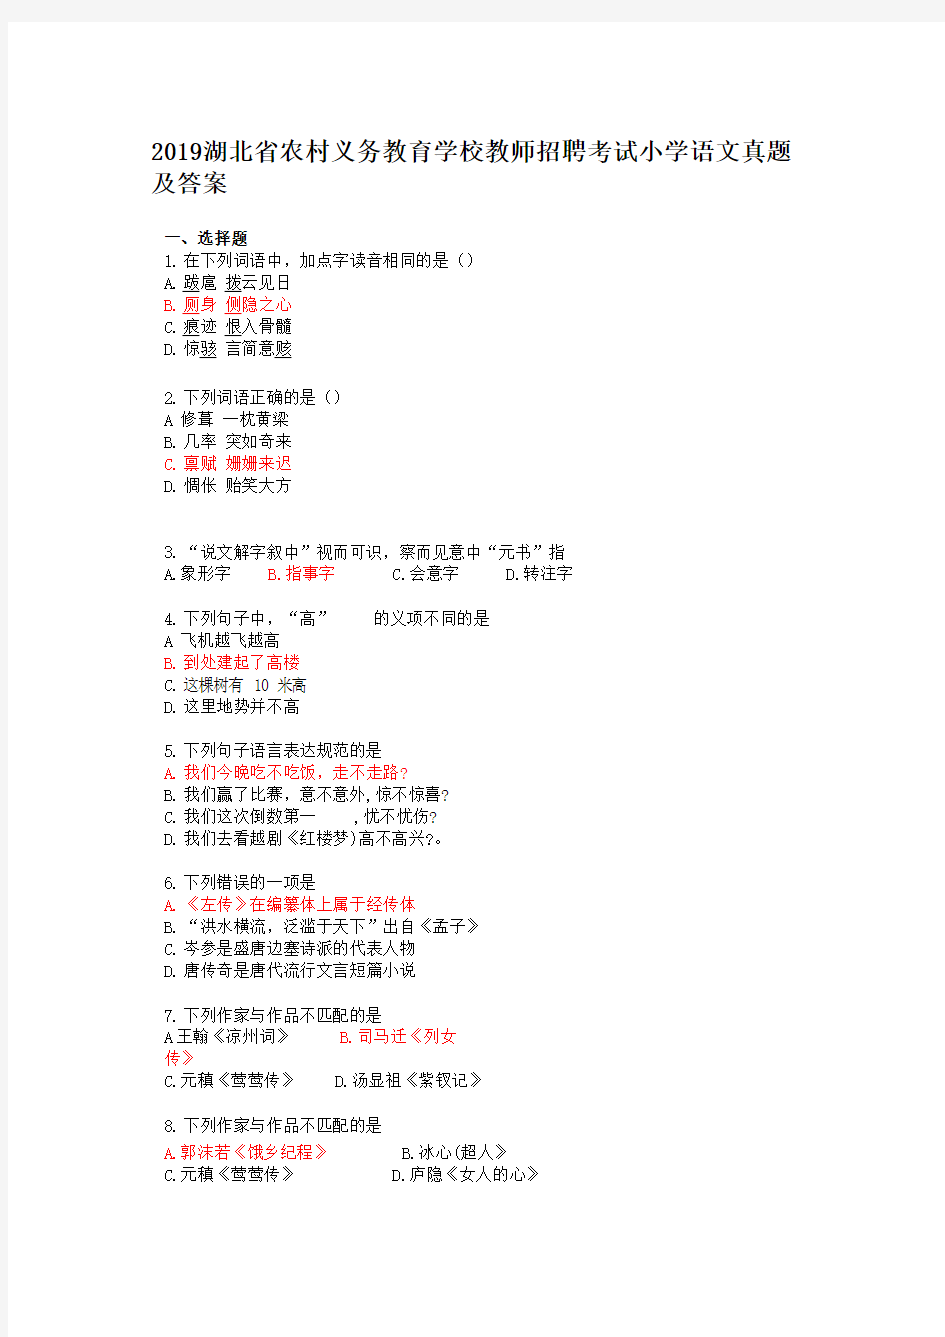 2019湖北省农村义务教育学校教师招聘考试小学语文真题及答案